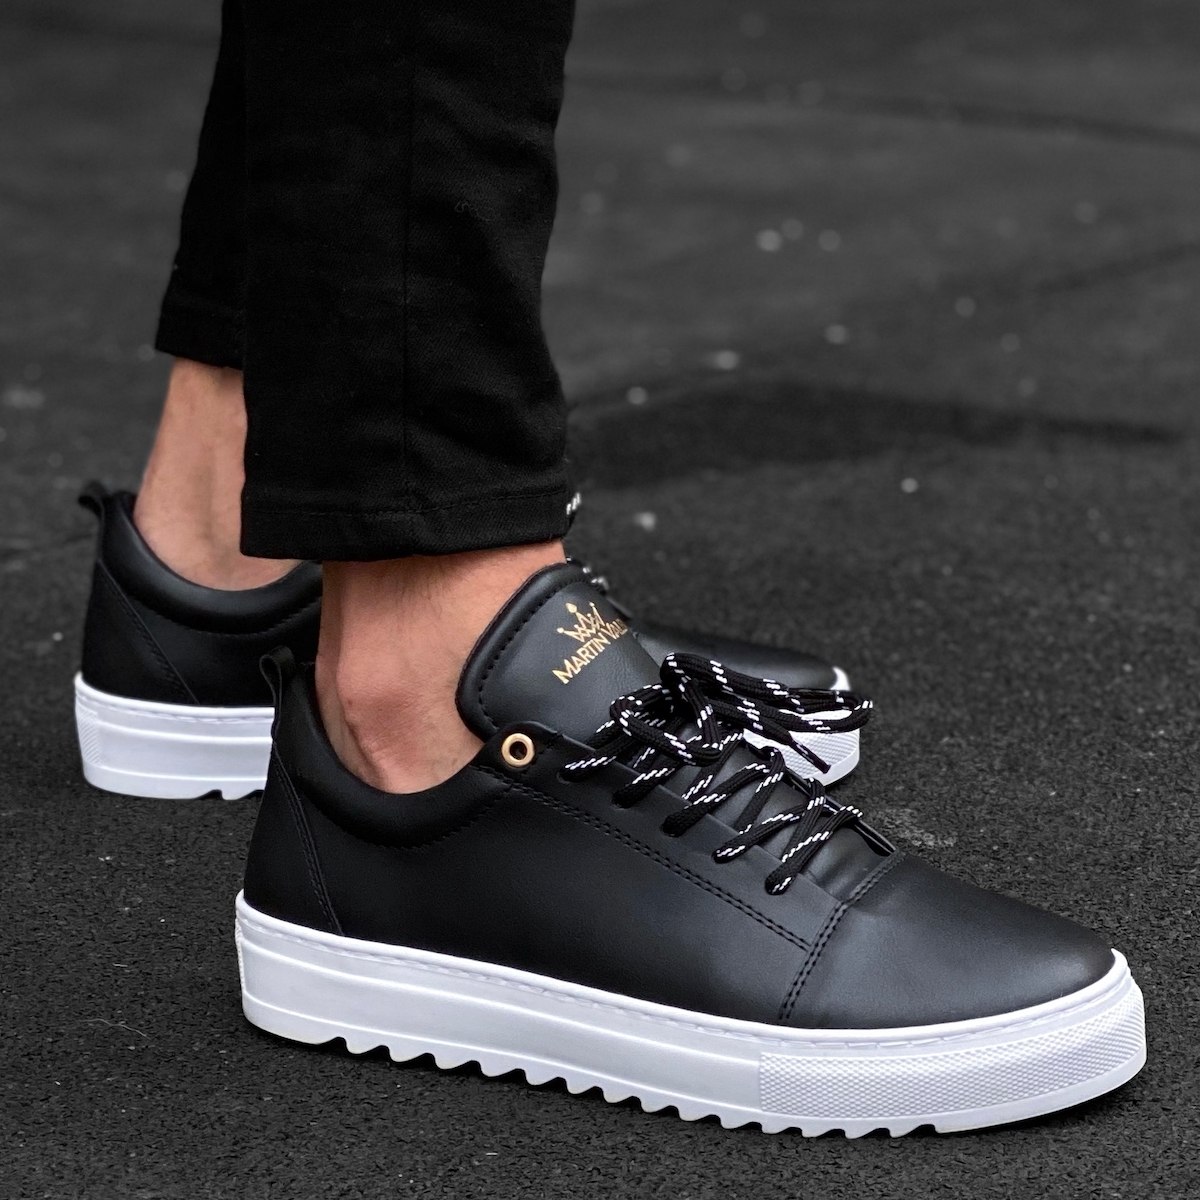 eiwit Heb geleerd Drama Men's Notch-Sole Sneakers In White & Black